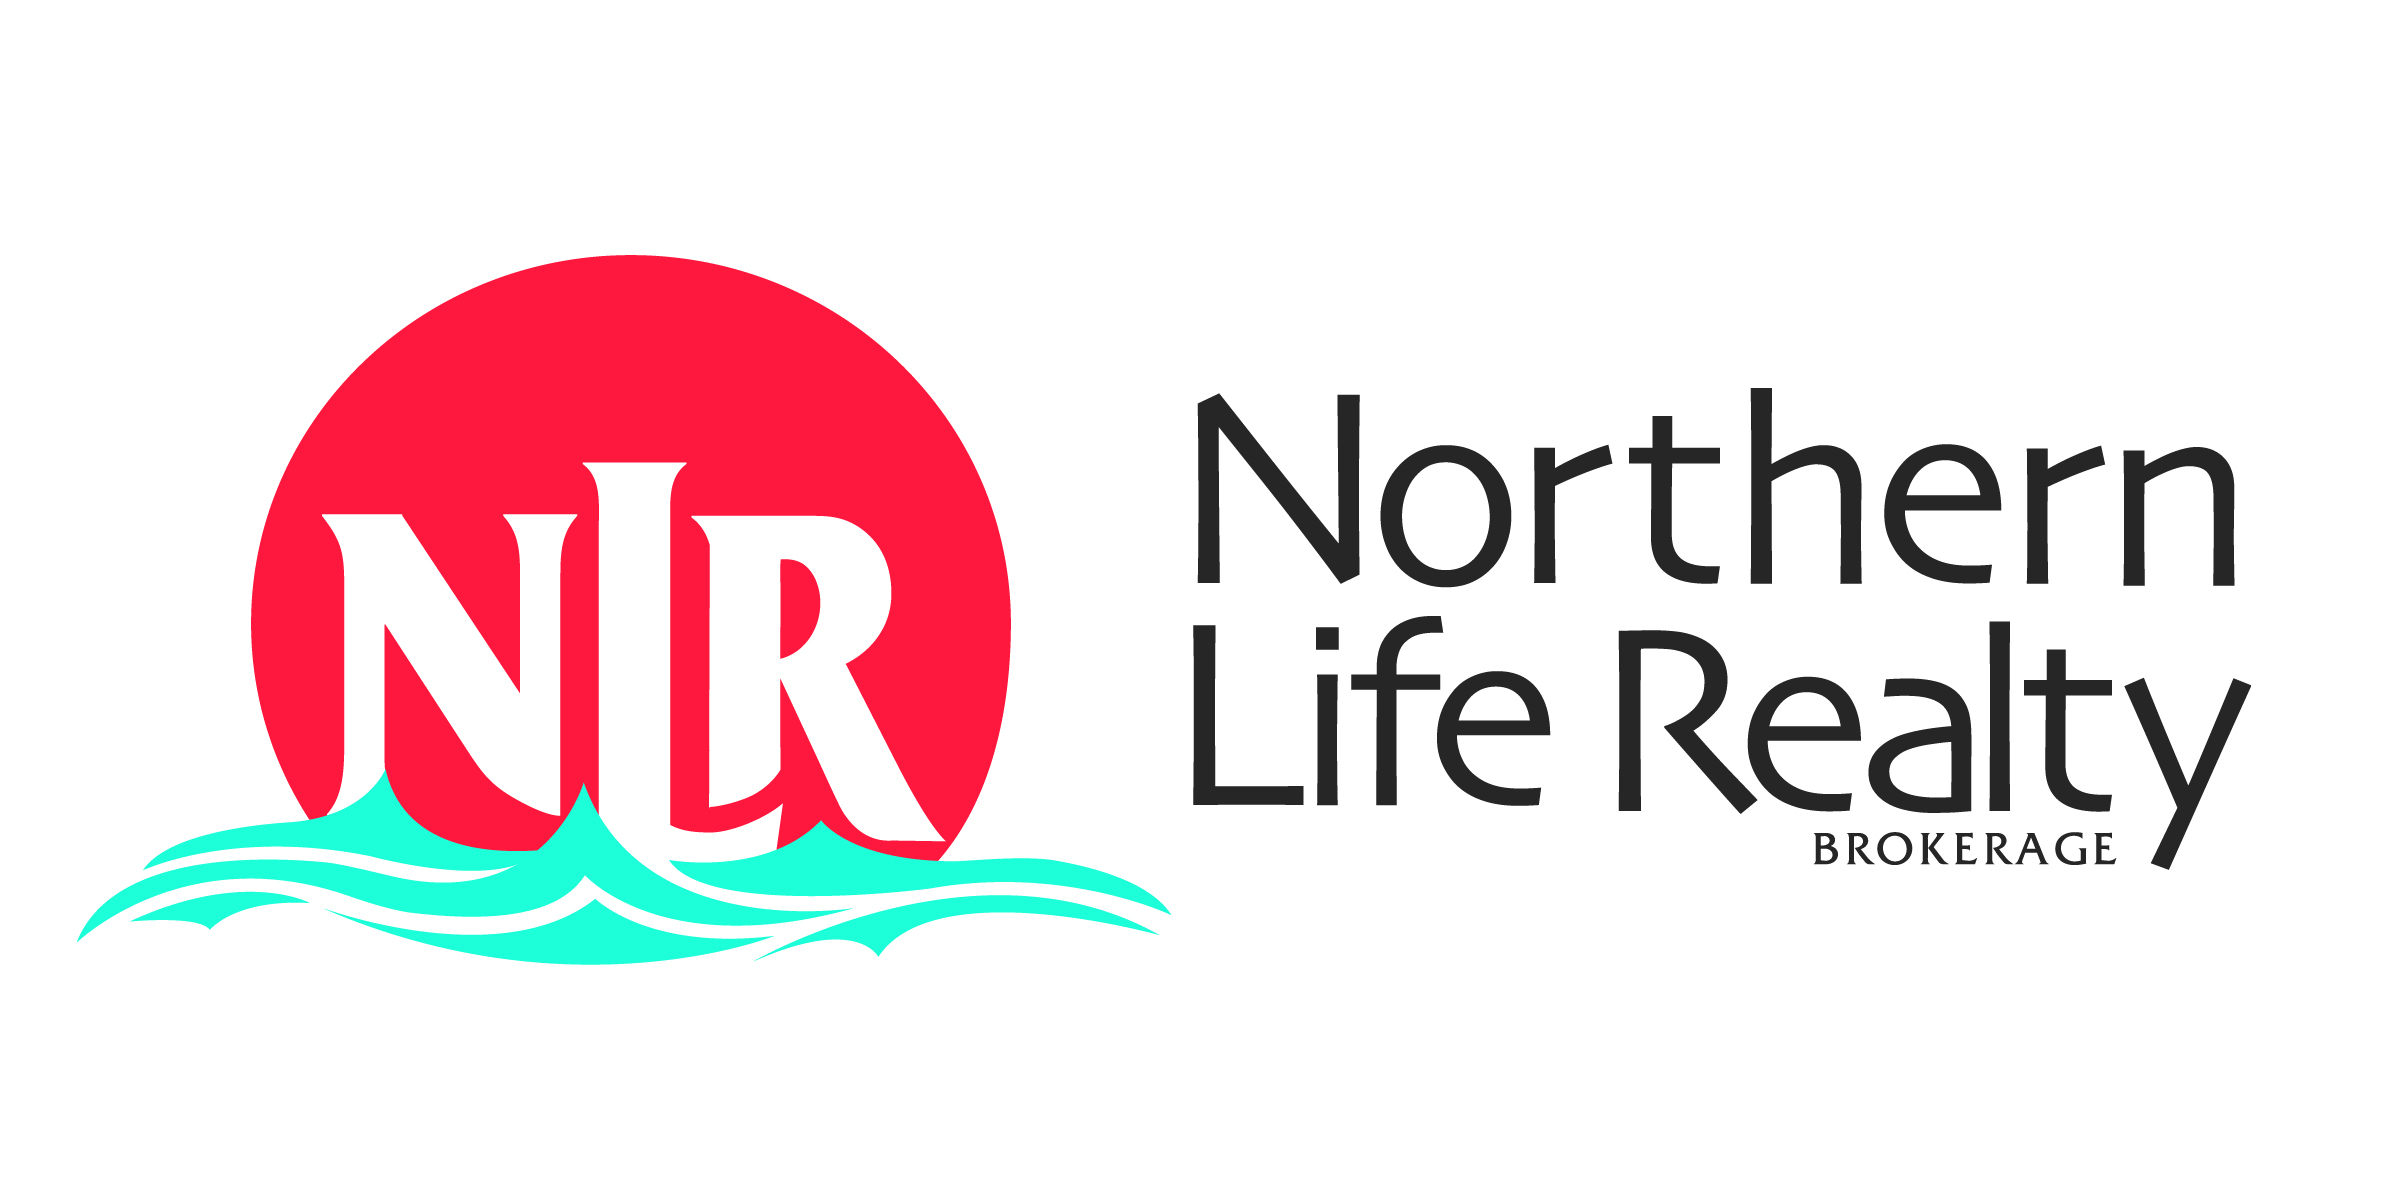 Royal LePage Northern Life Realty